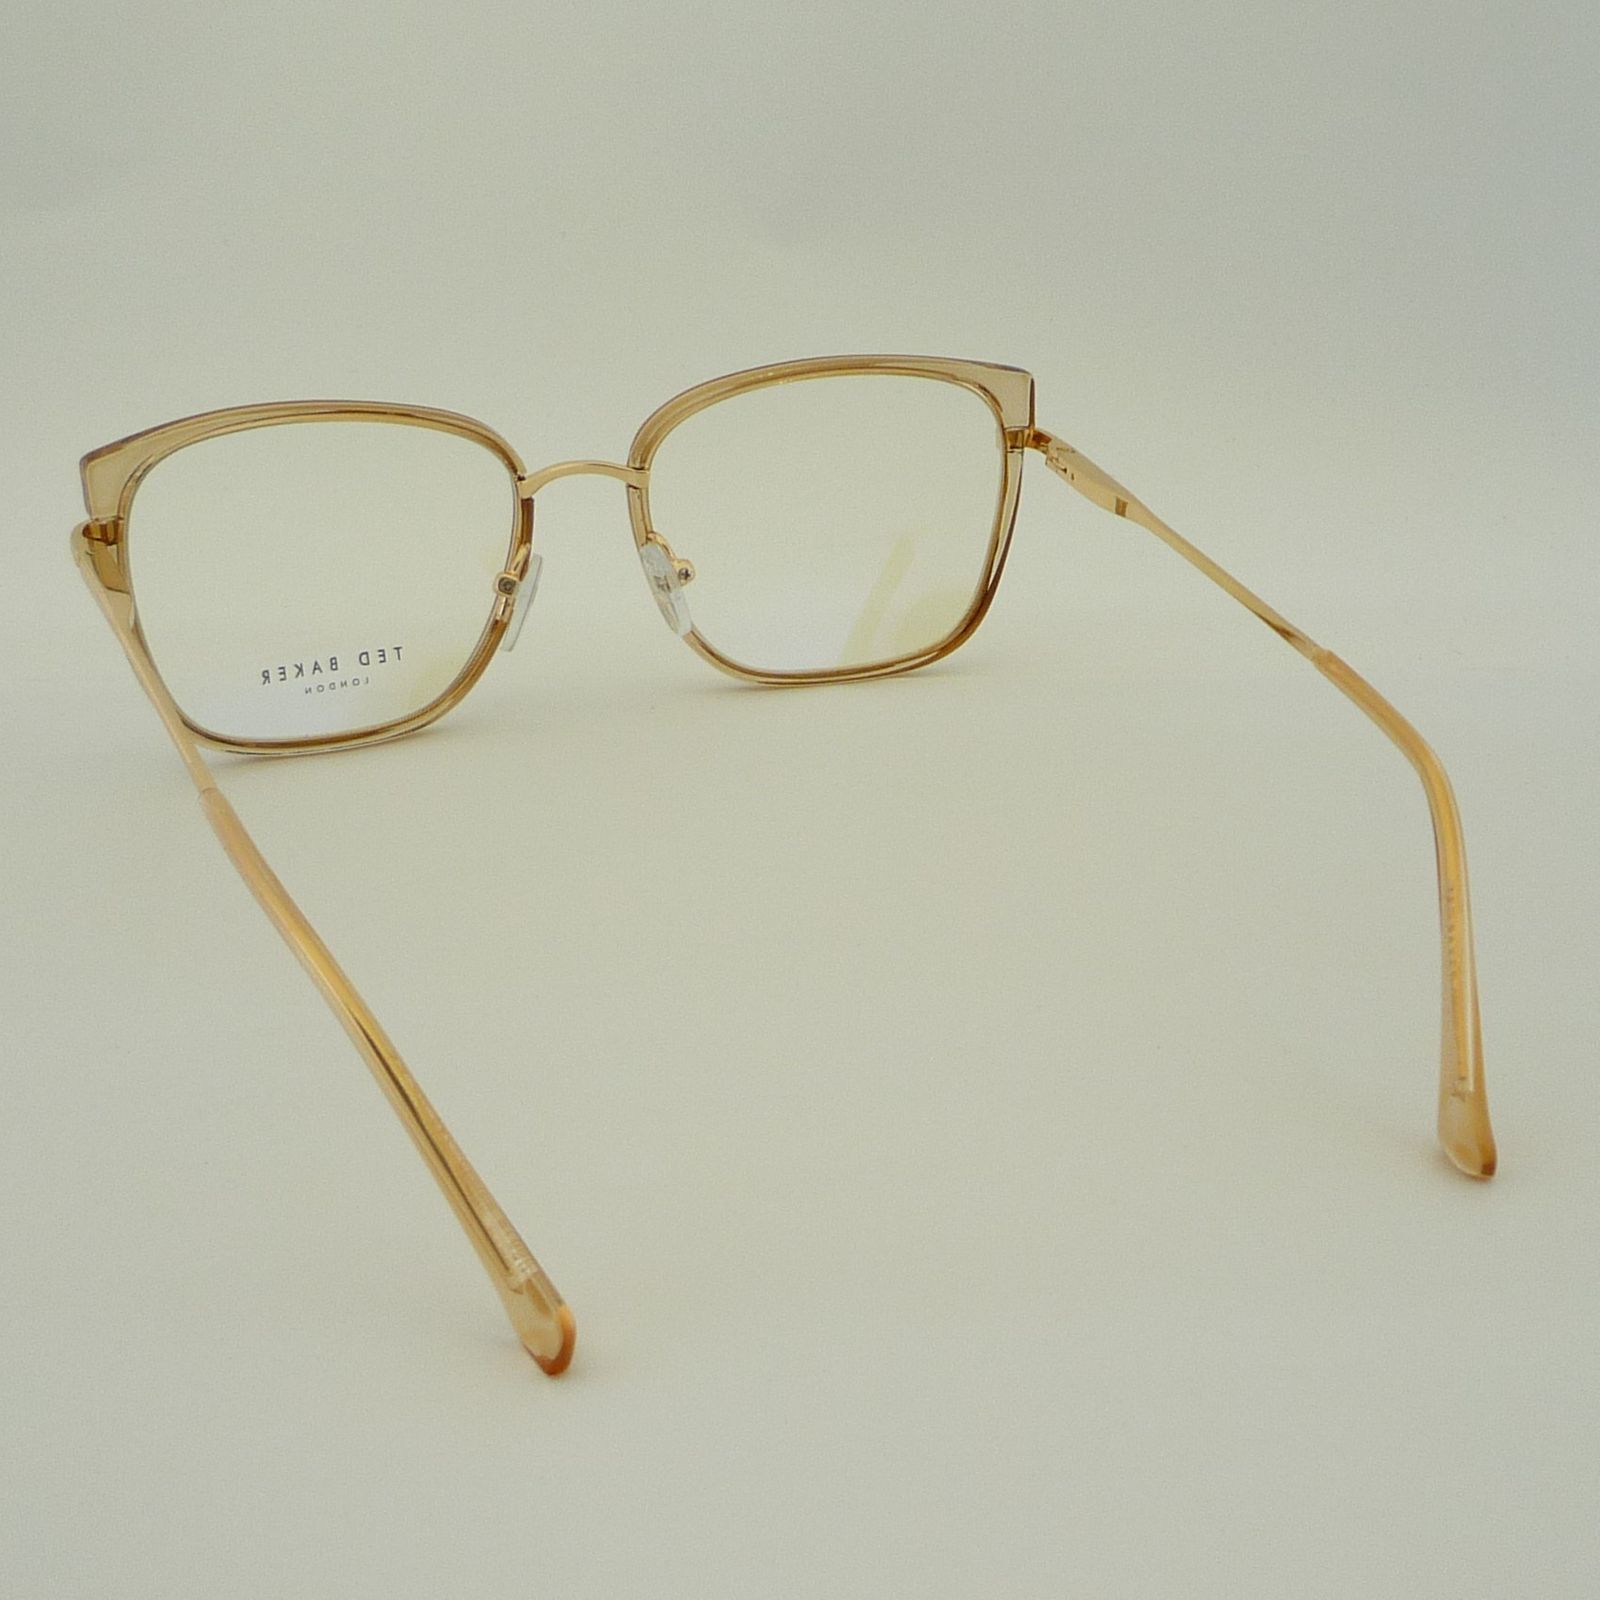 فریم عینک طبی زنانه تد بیکر مدل 95618C9 -  - 7